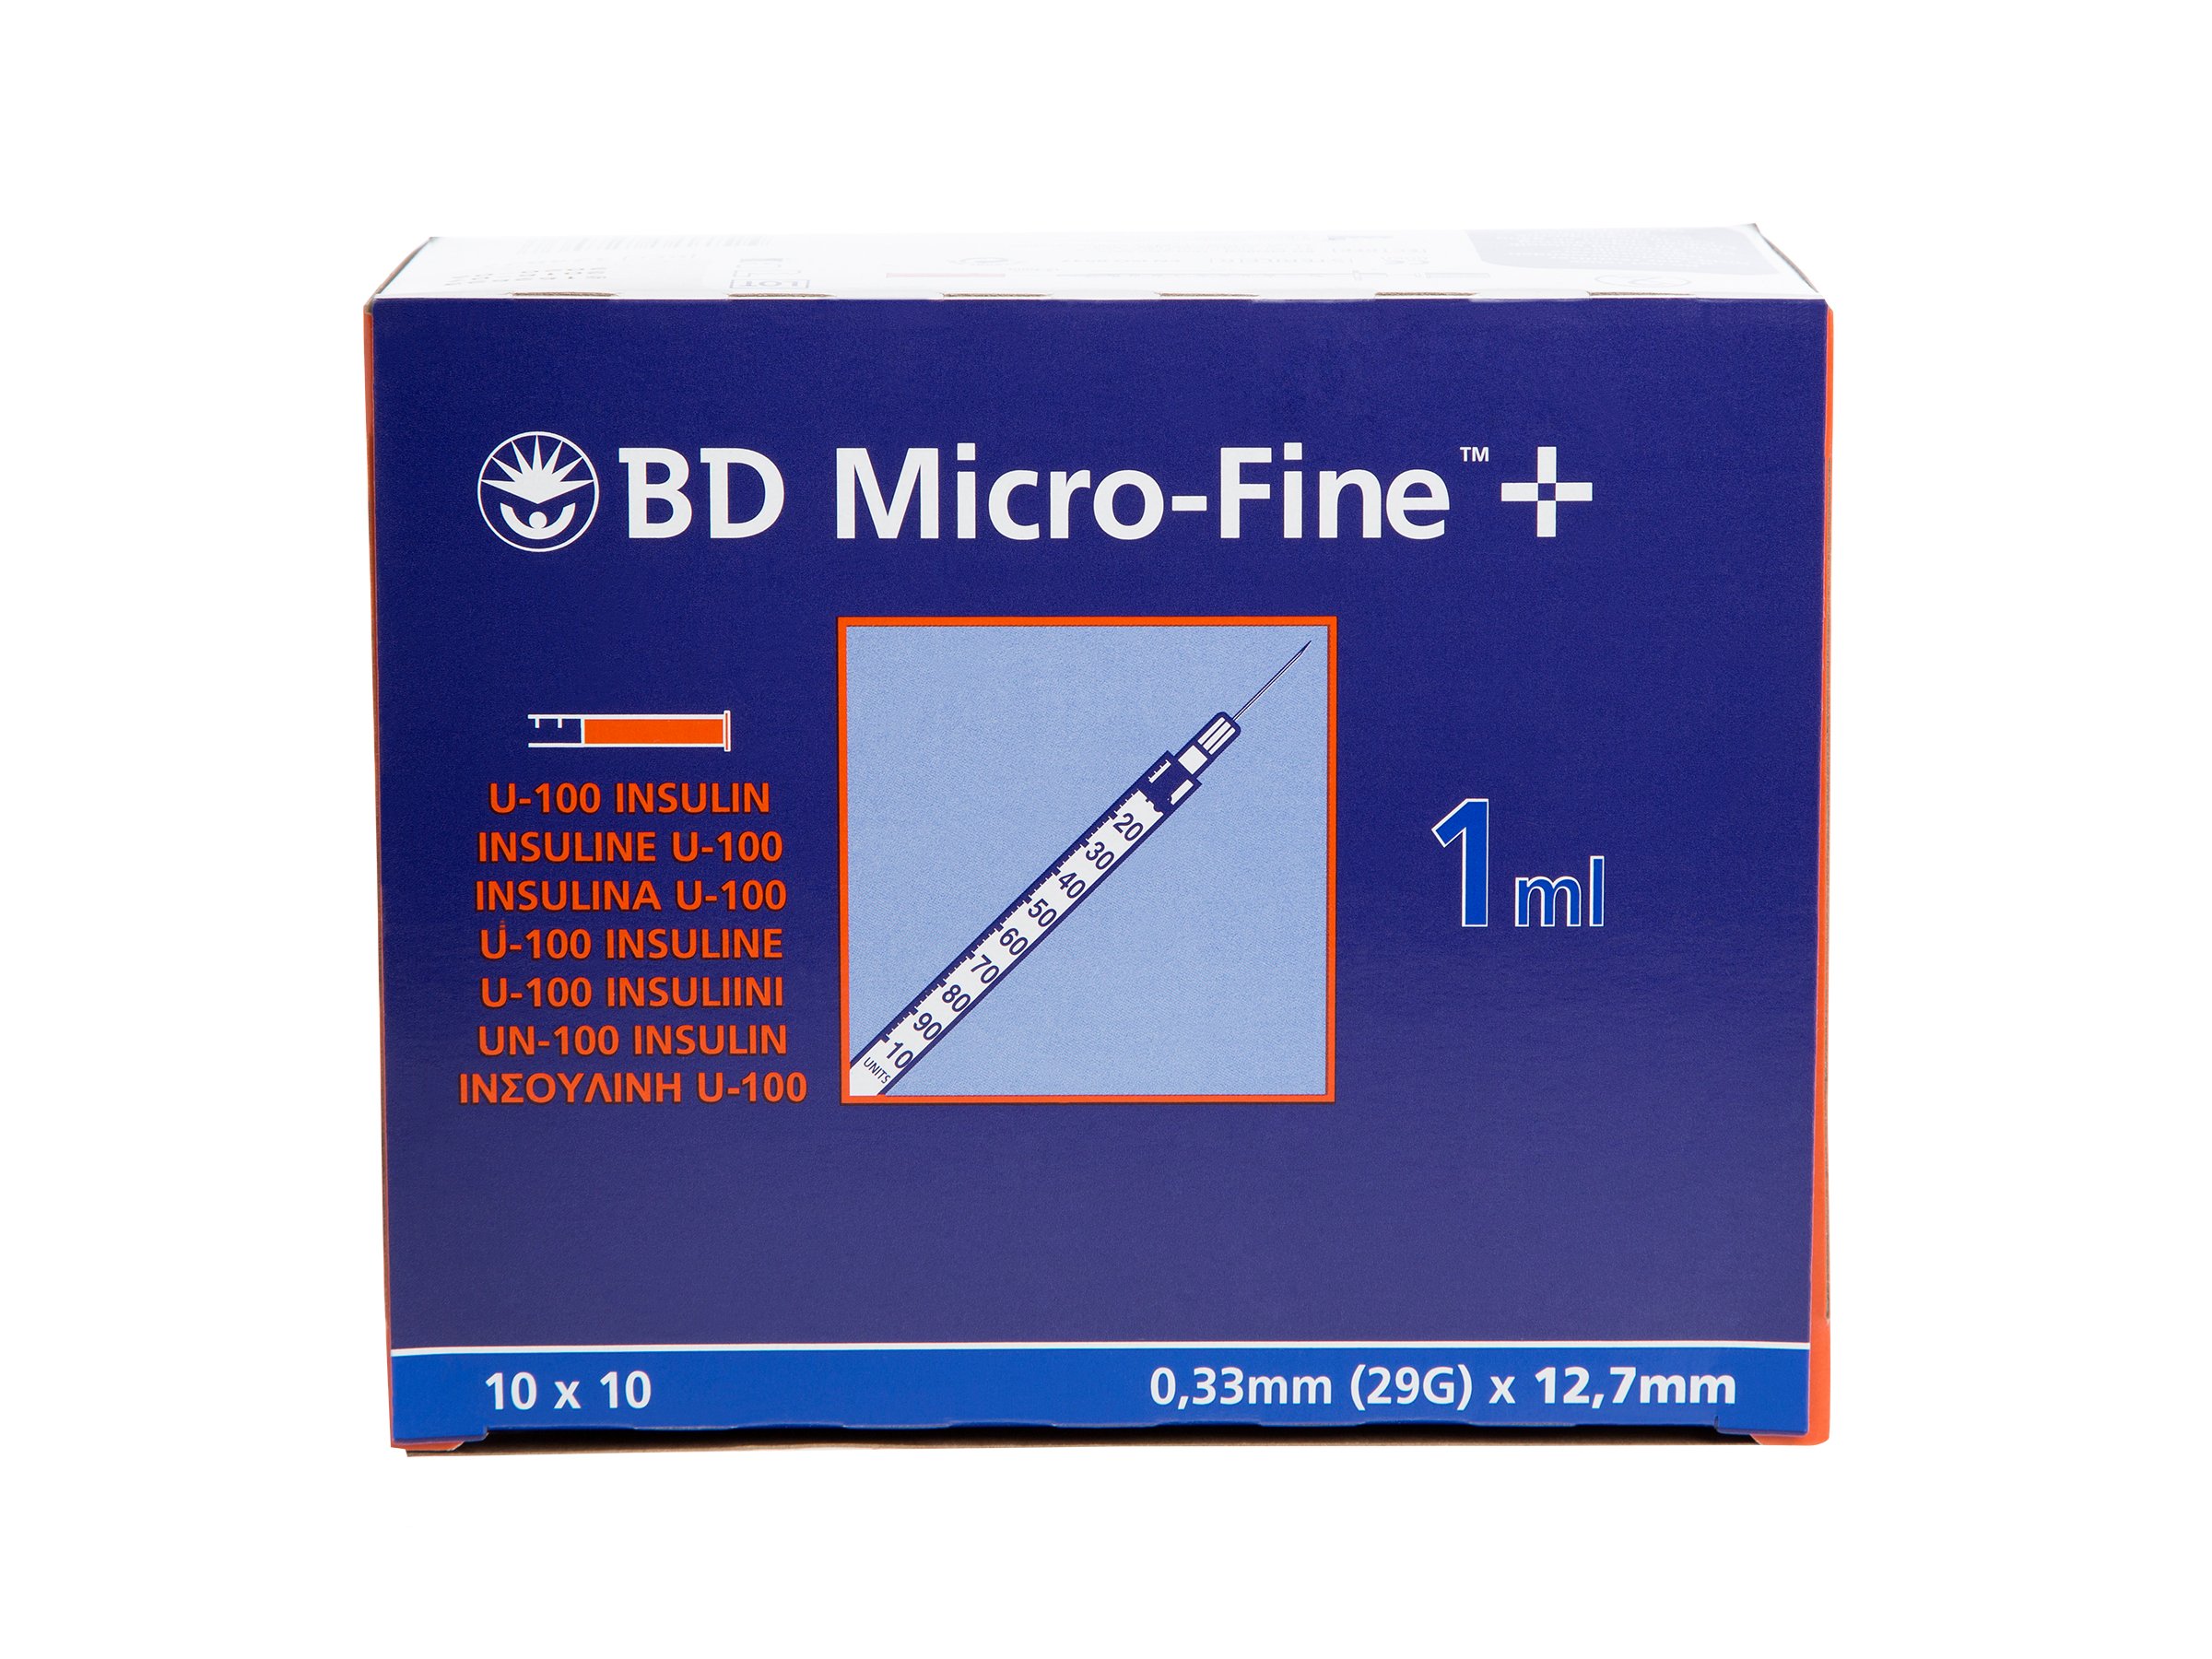 BD Micro-Fine sprøyte, 1ml 12,7mm, 100 stk.